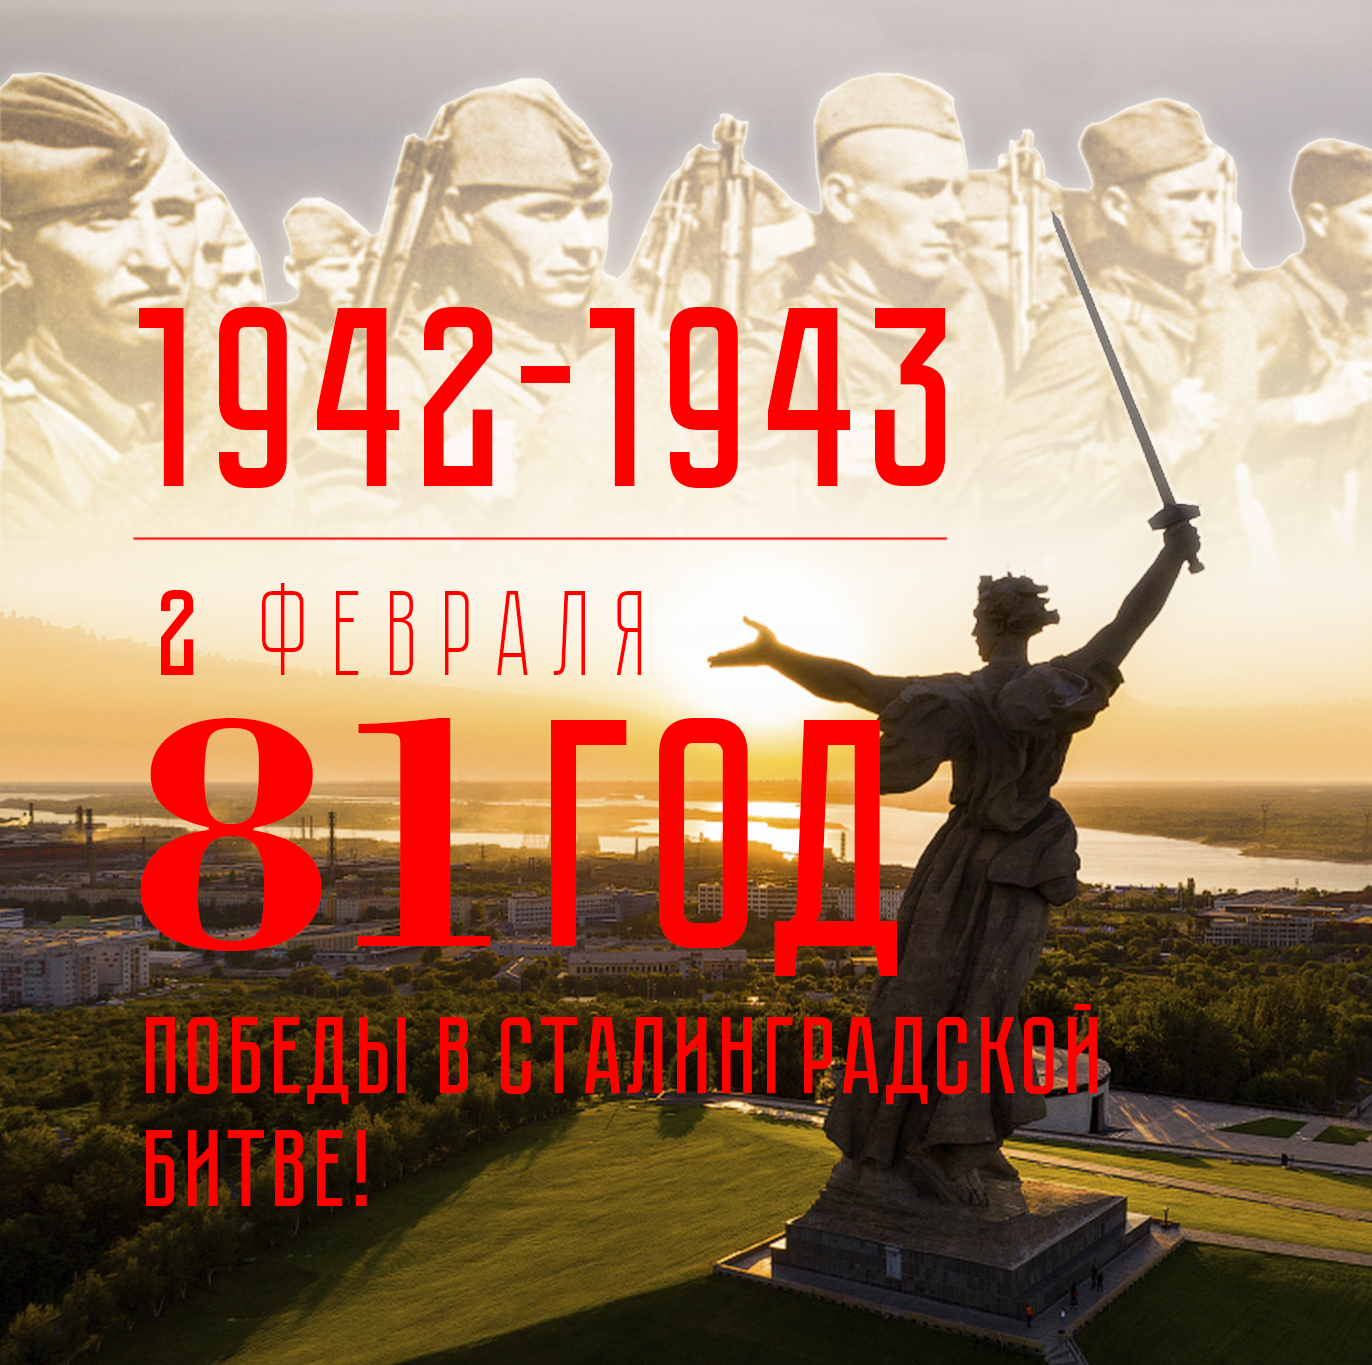 Поздравляем с 81-ой годовщиной Победы в Сталинградской Битве!